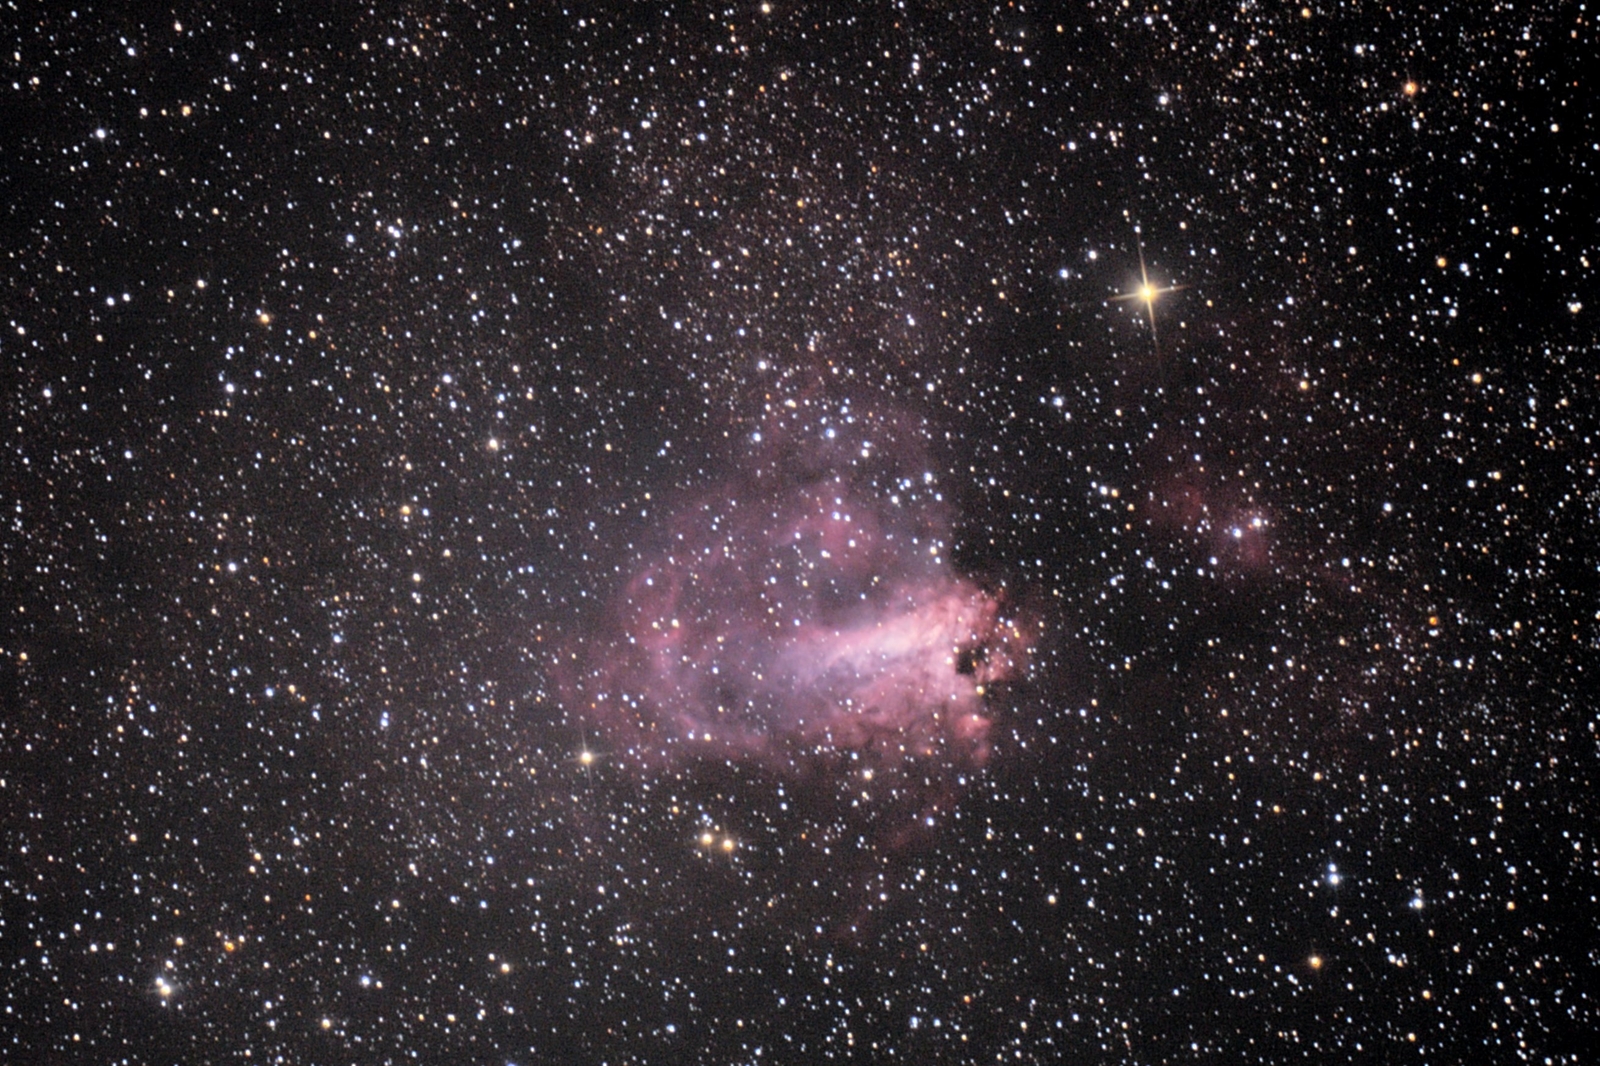 2018-09-07 Omega/Swan/Horseshoe nebula (M17)